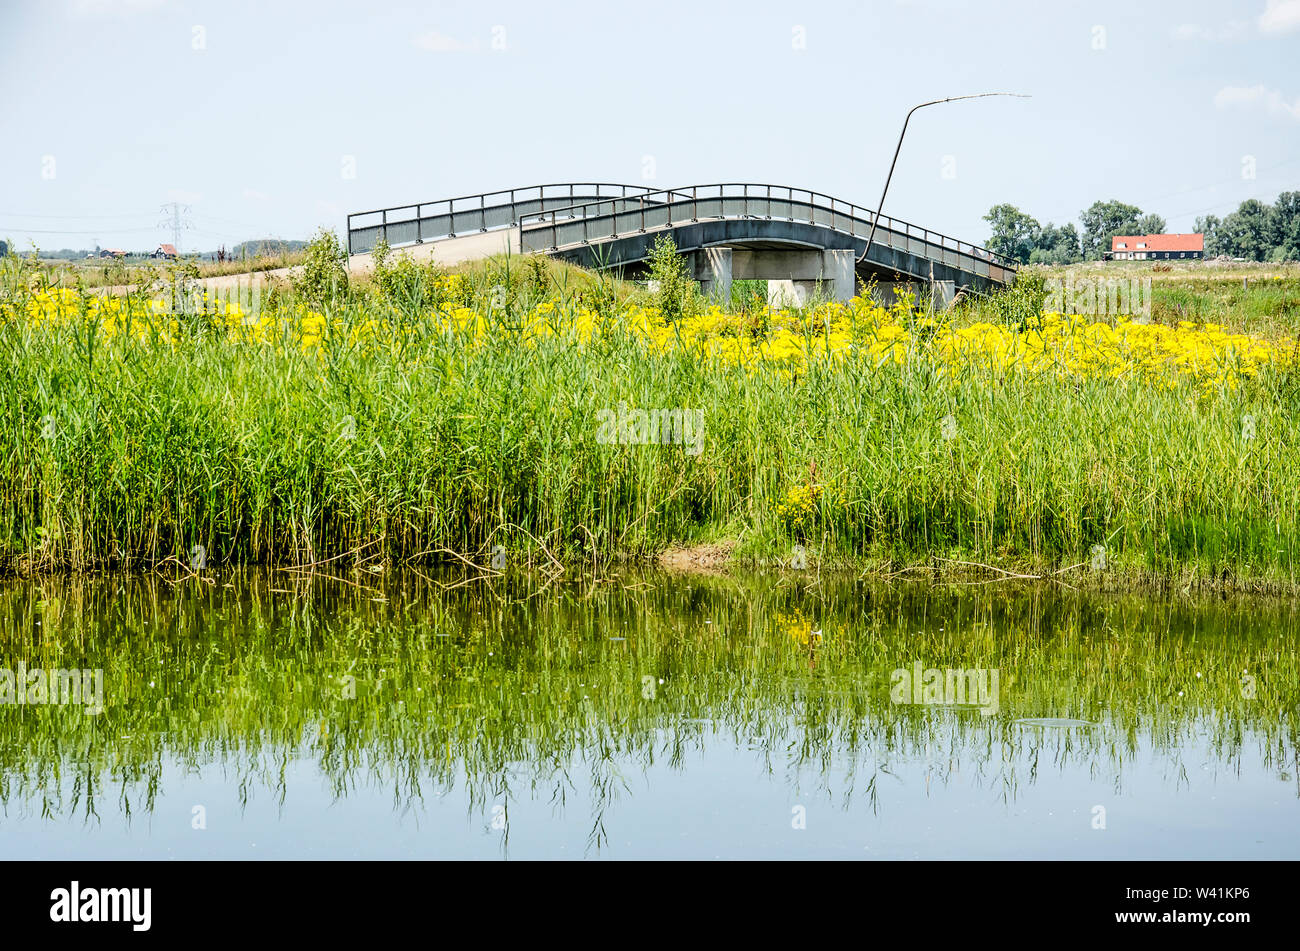 Schilf, Gräser und gelbe Wildblumen am Ufer eines Baches in der Noordwaard Abschnitt der Biesbosch Nationalpark in den Niederlanden mit einem konkreten p Stockfoto